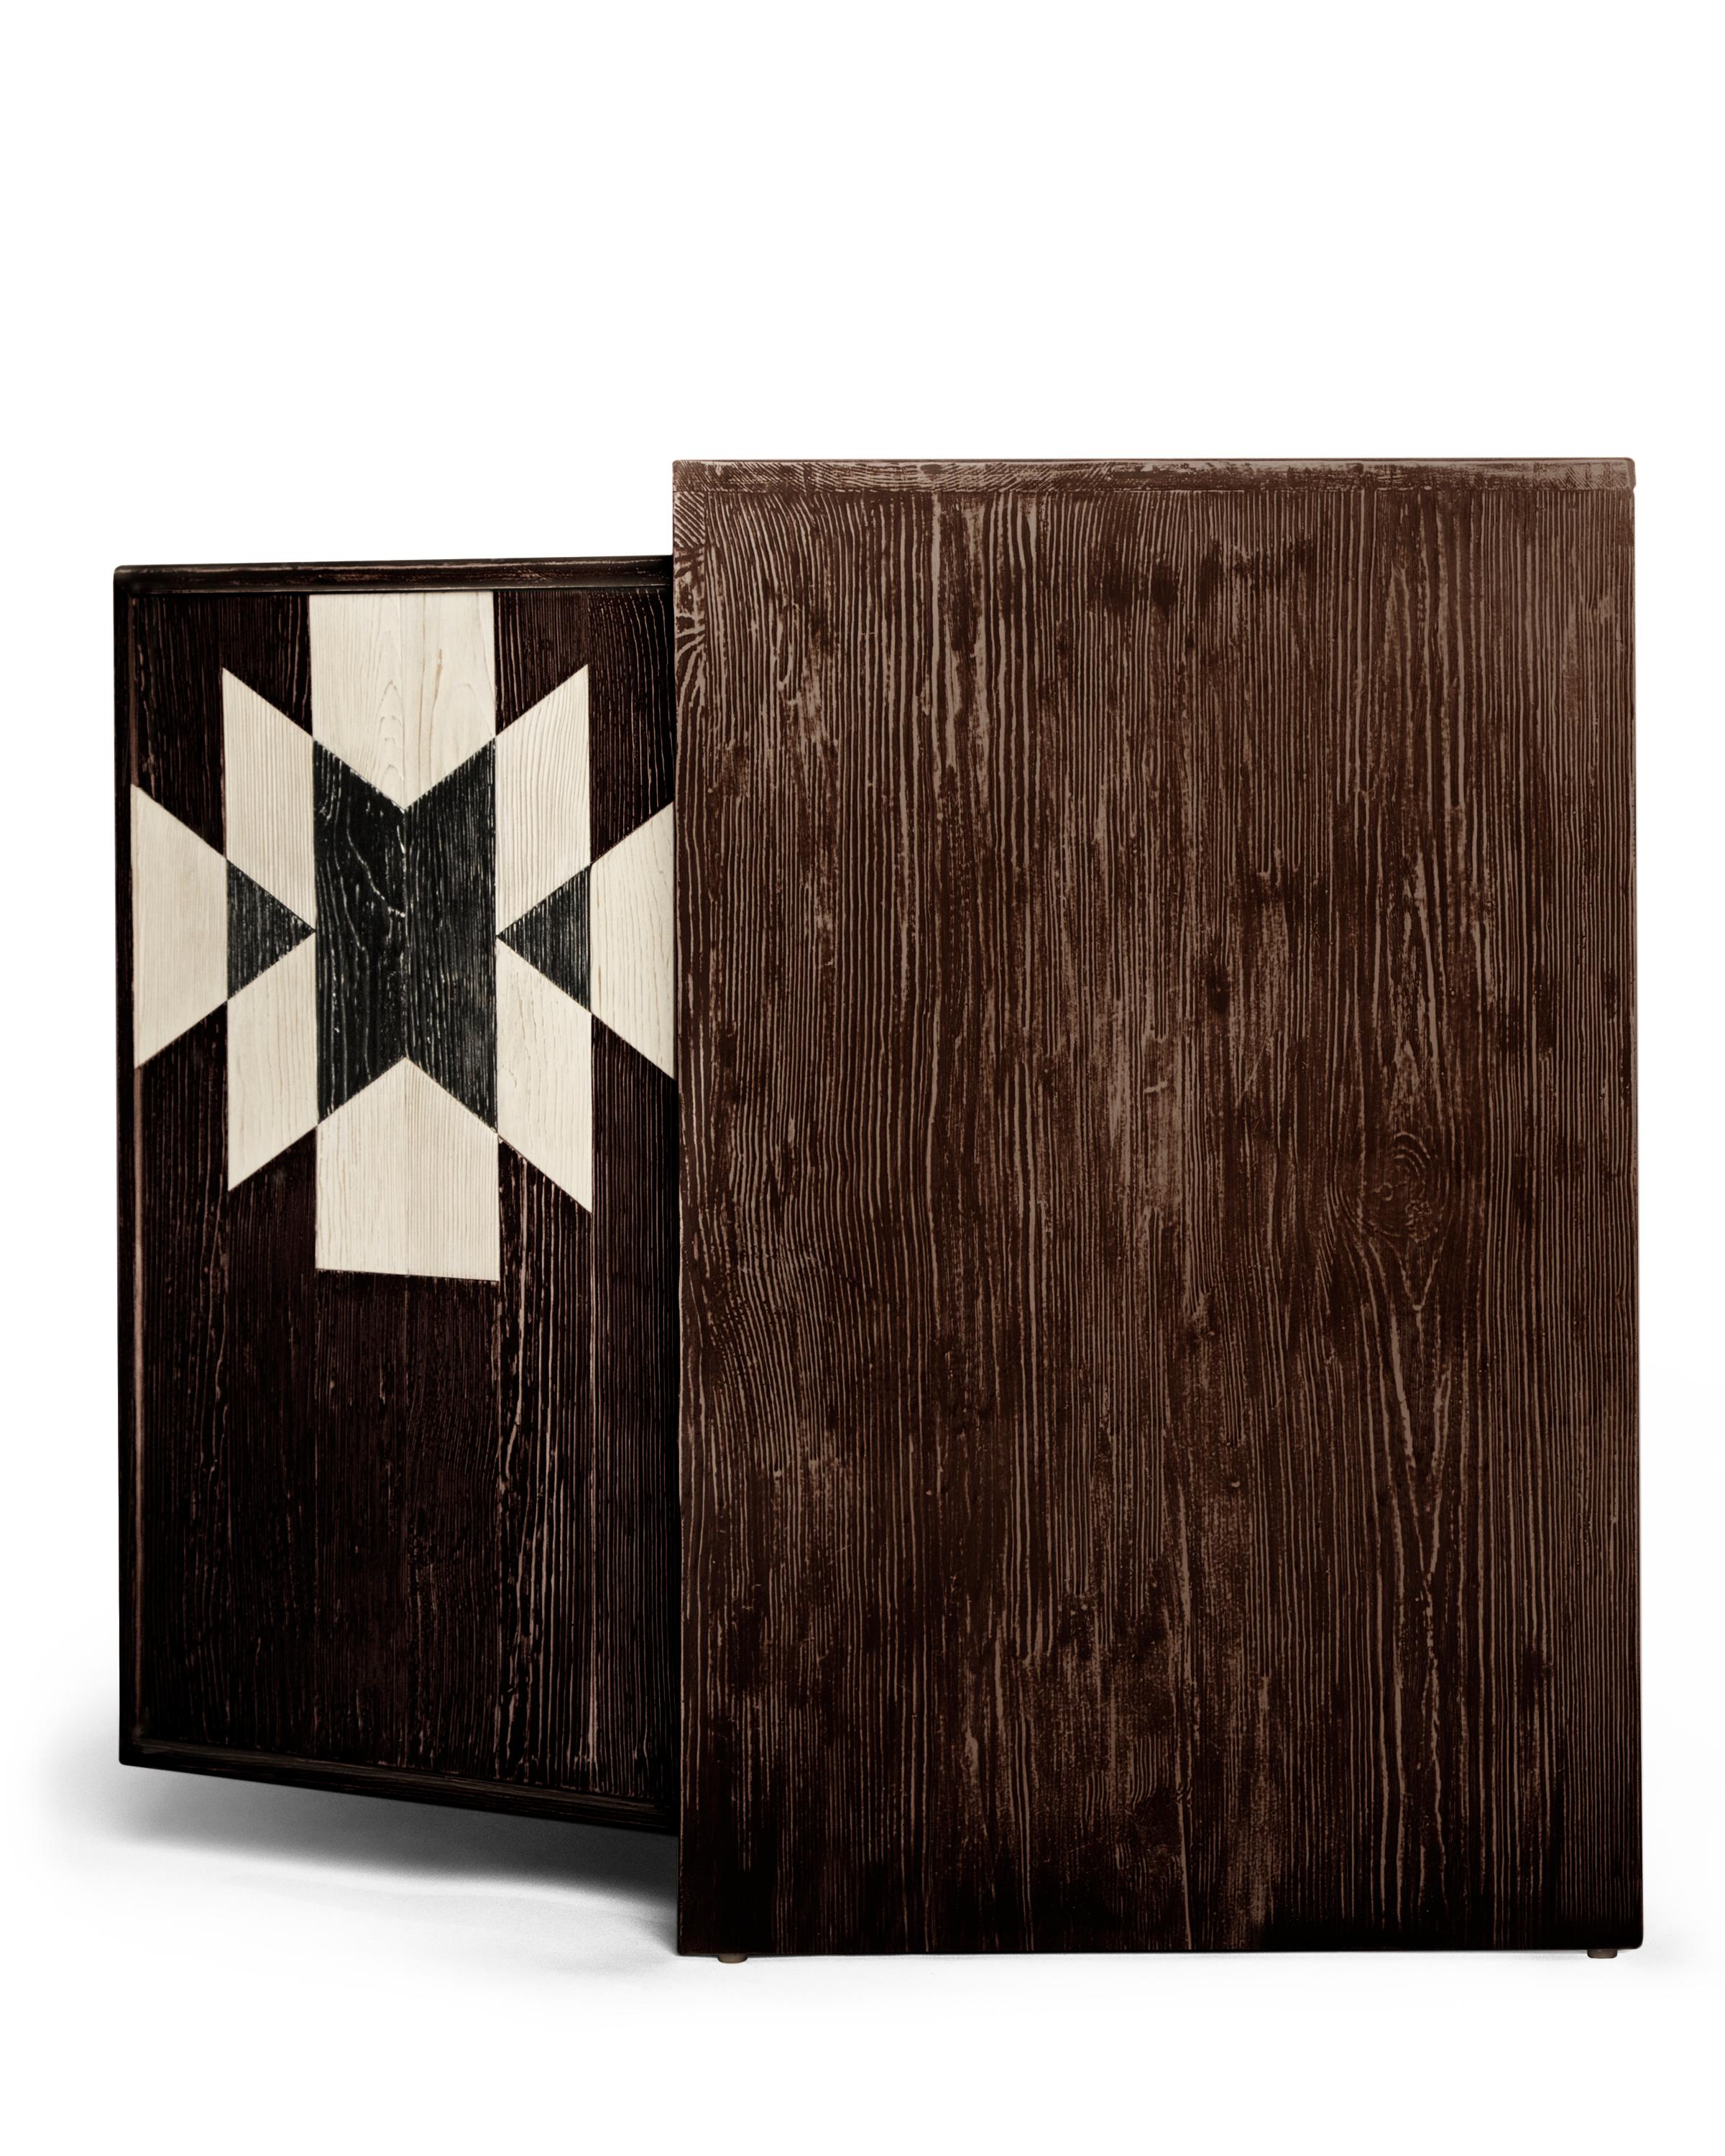 Diese sorgfältig konstruierte Capistrano-Credenza besticht durch ihr einzigartiges, spanisch inspiriertes Design. Durch die Verwendung von feinem, handbemaltem, rustikalem Holz vermittelt die Capistrano-Kollektion ein reichhaltiges und